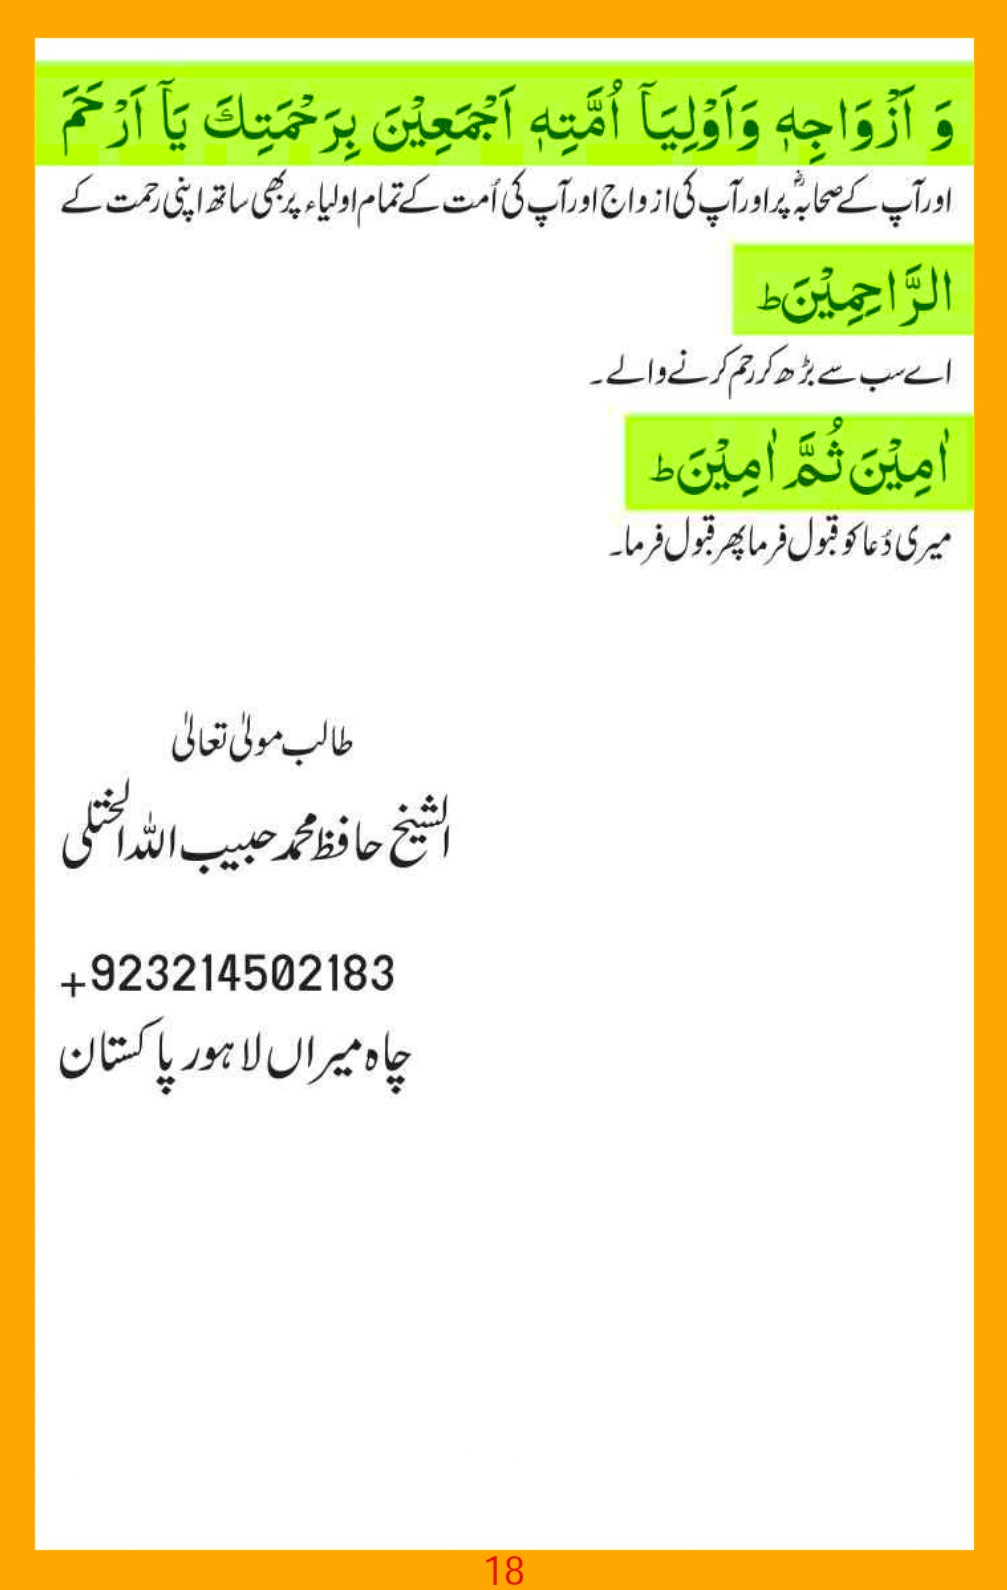 ism-e-azam-asma-e-jabroot_page-0018